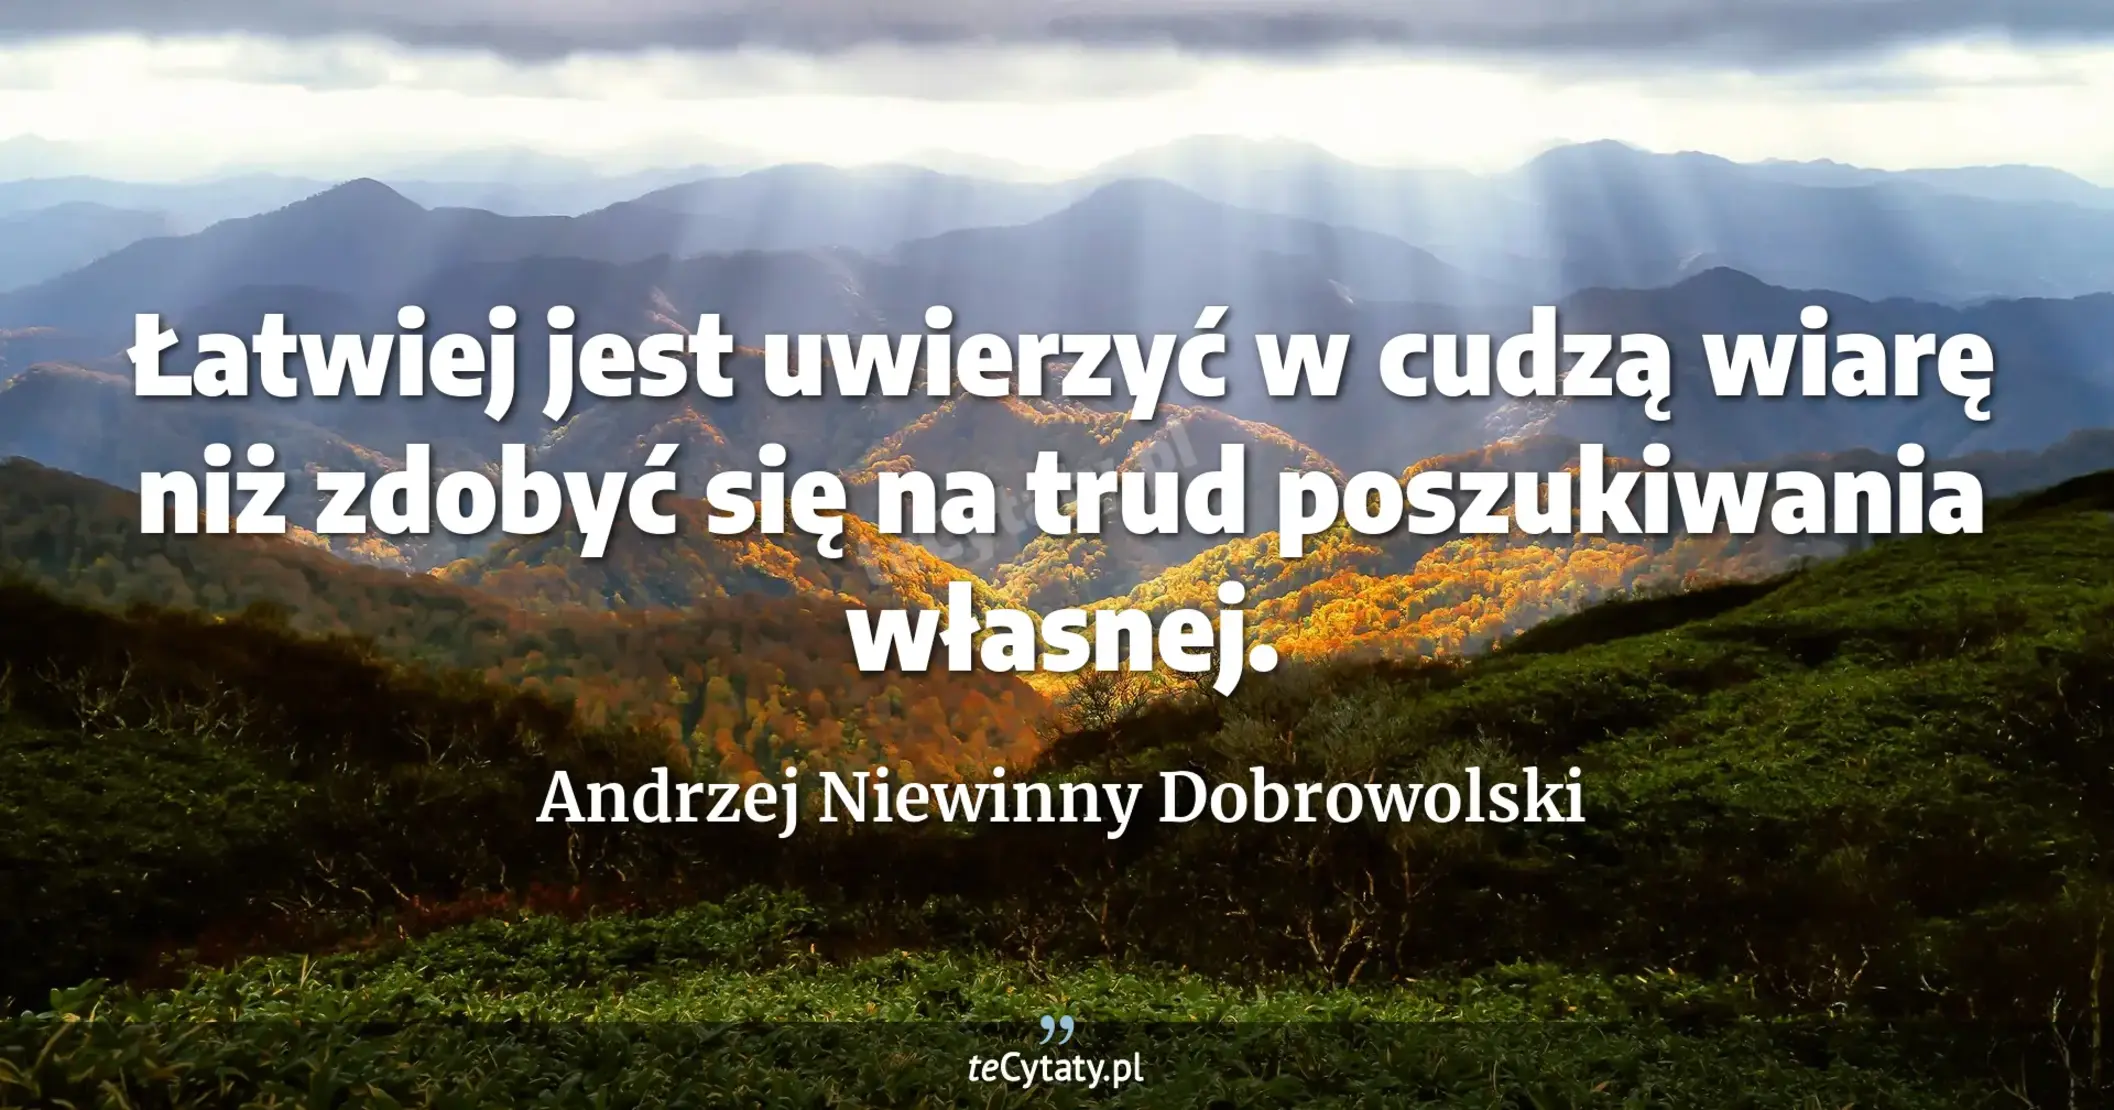 Łatwiej jest uwierzyć w cudzą wiarę niż zdobyć się na trud poszukiwania własnej. - Andrzej Niewinny Dobrowolski